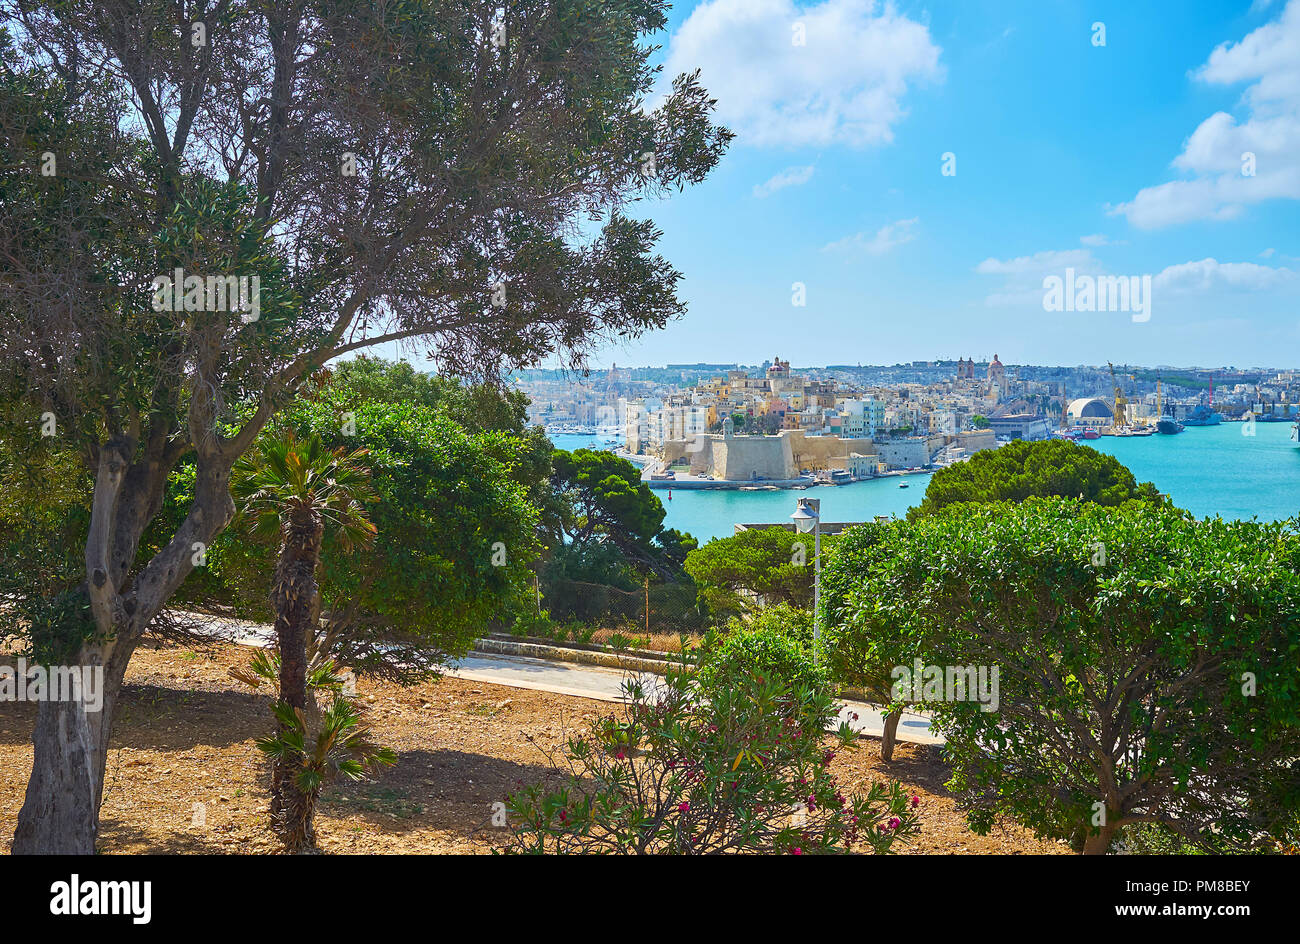 La succosa verde di Herbert Ganado giardini con vista su Senglea medievale (L-Isla) città fortificata attraverso il Grand Harbour di La Valletta, Malta. Foto Stock